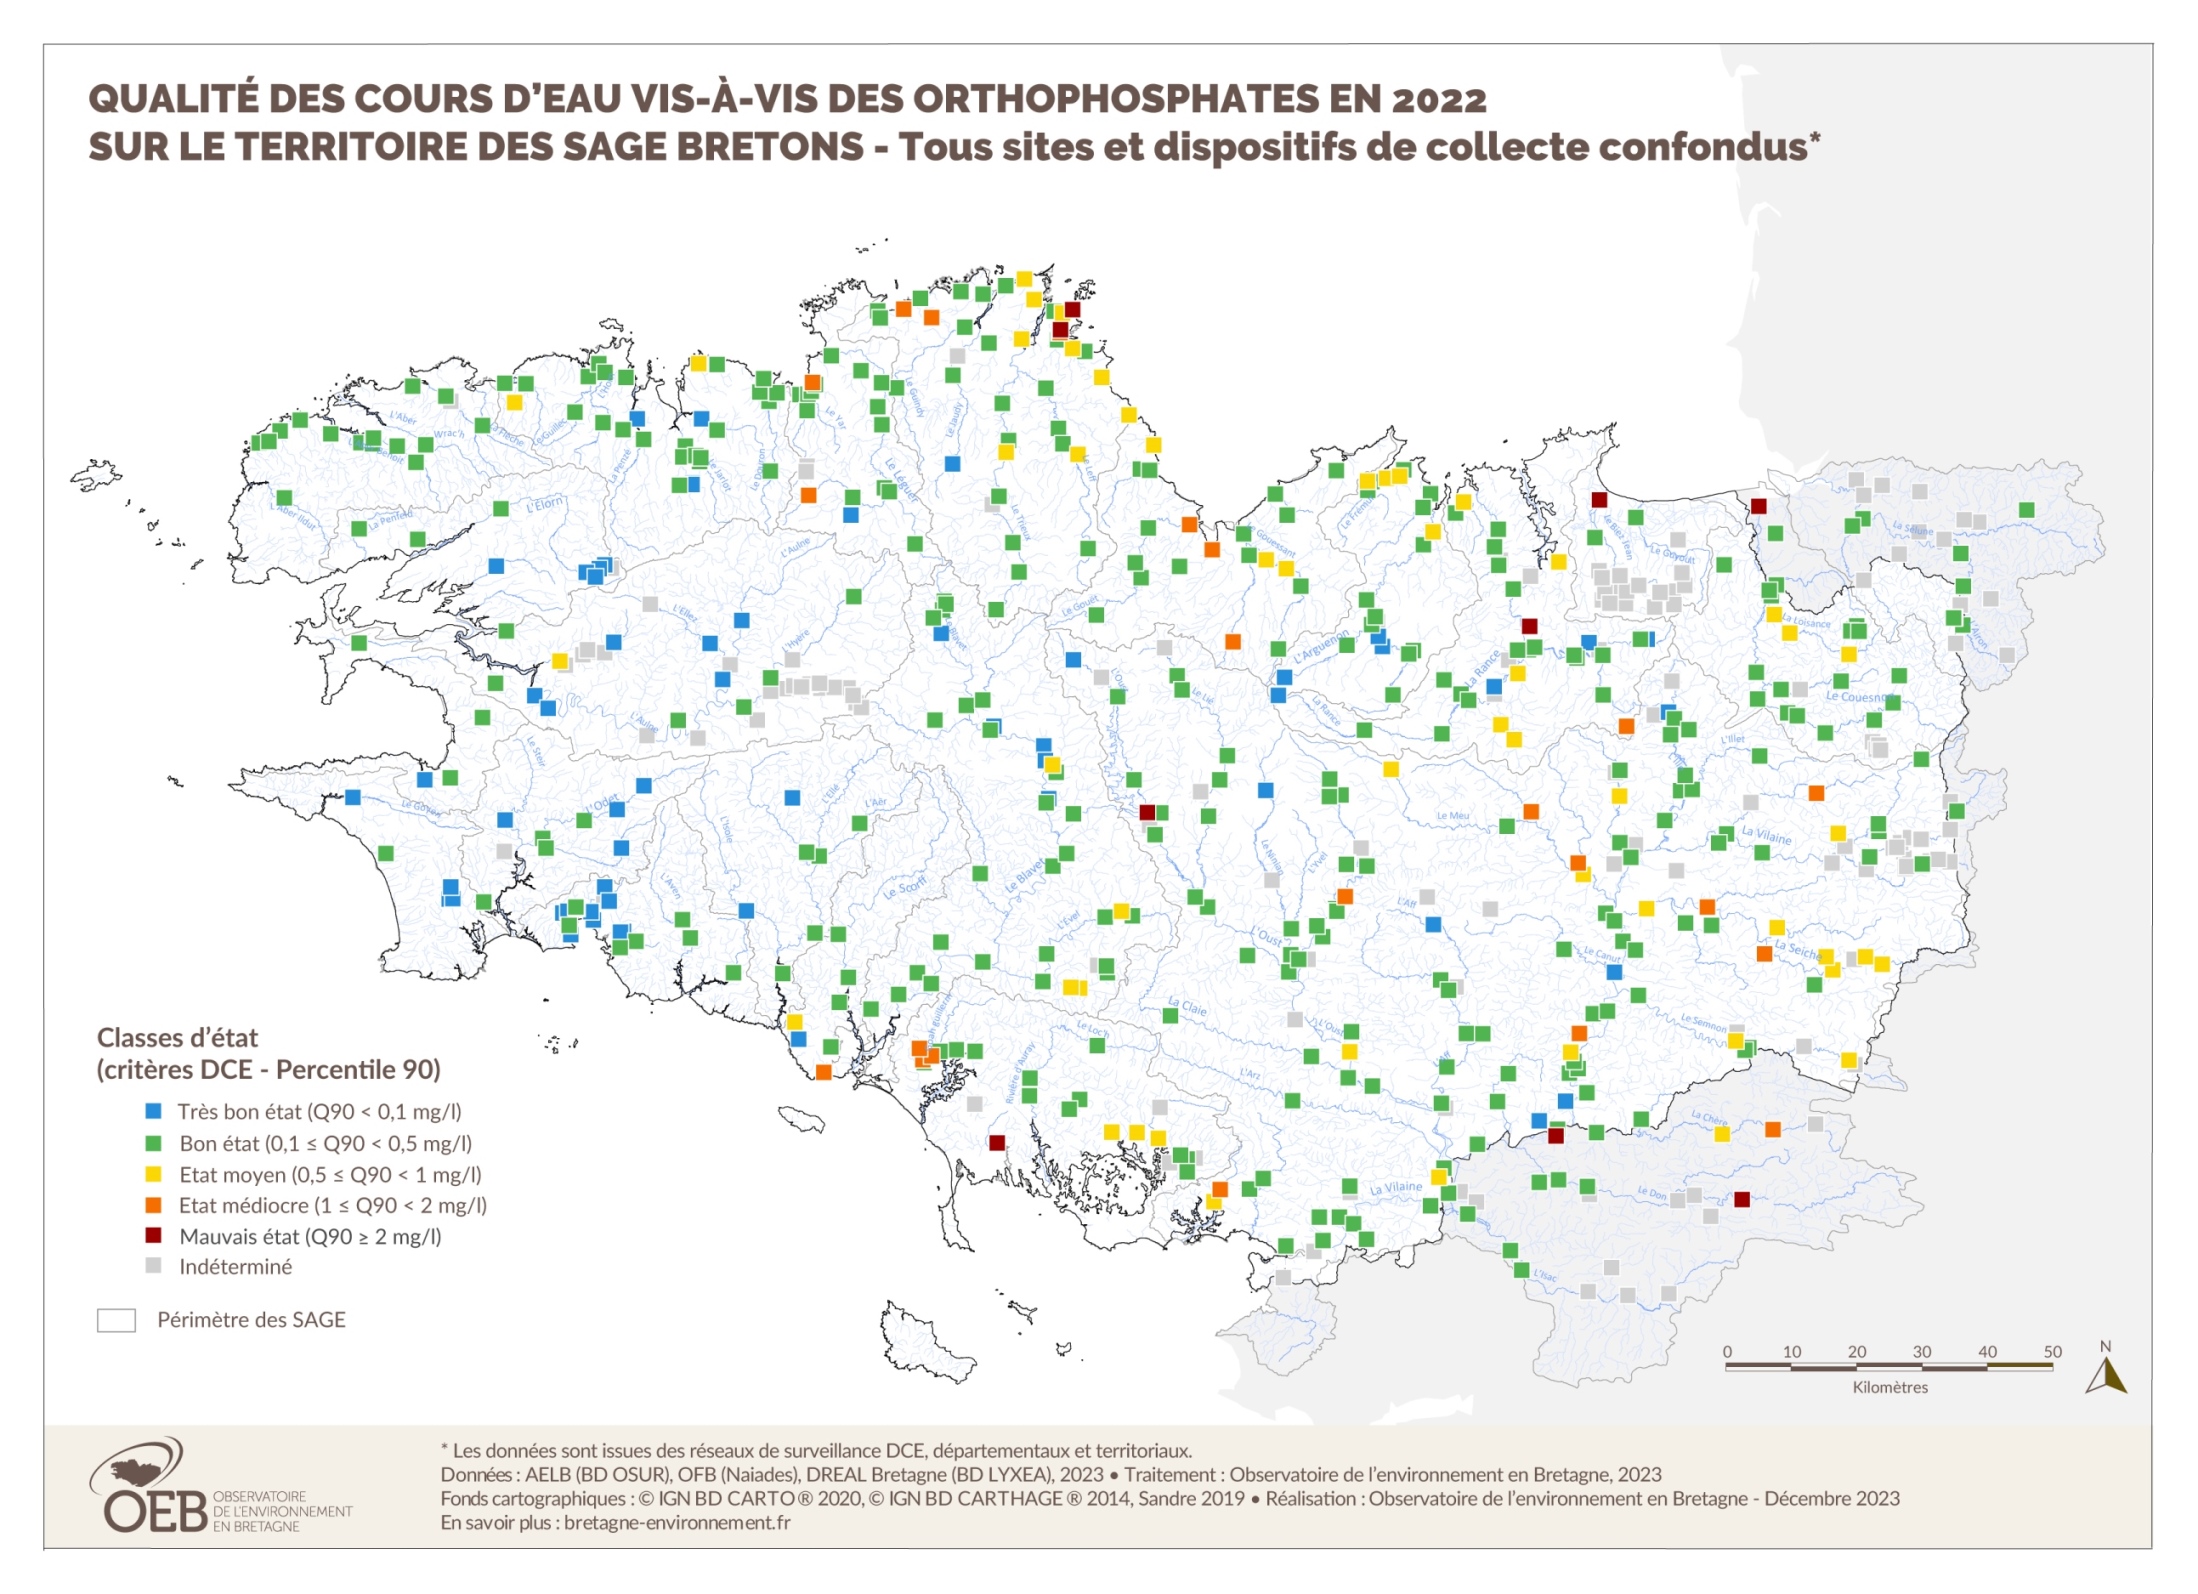 Qualité des cours d'eau bretons vis-à-vis des orthophosphates en 2016